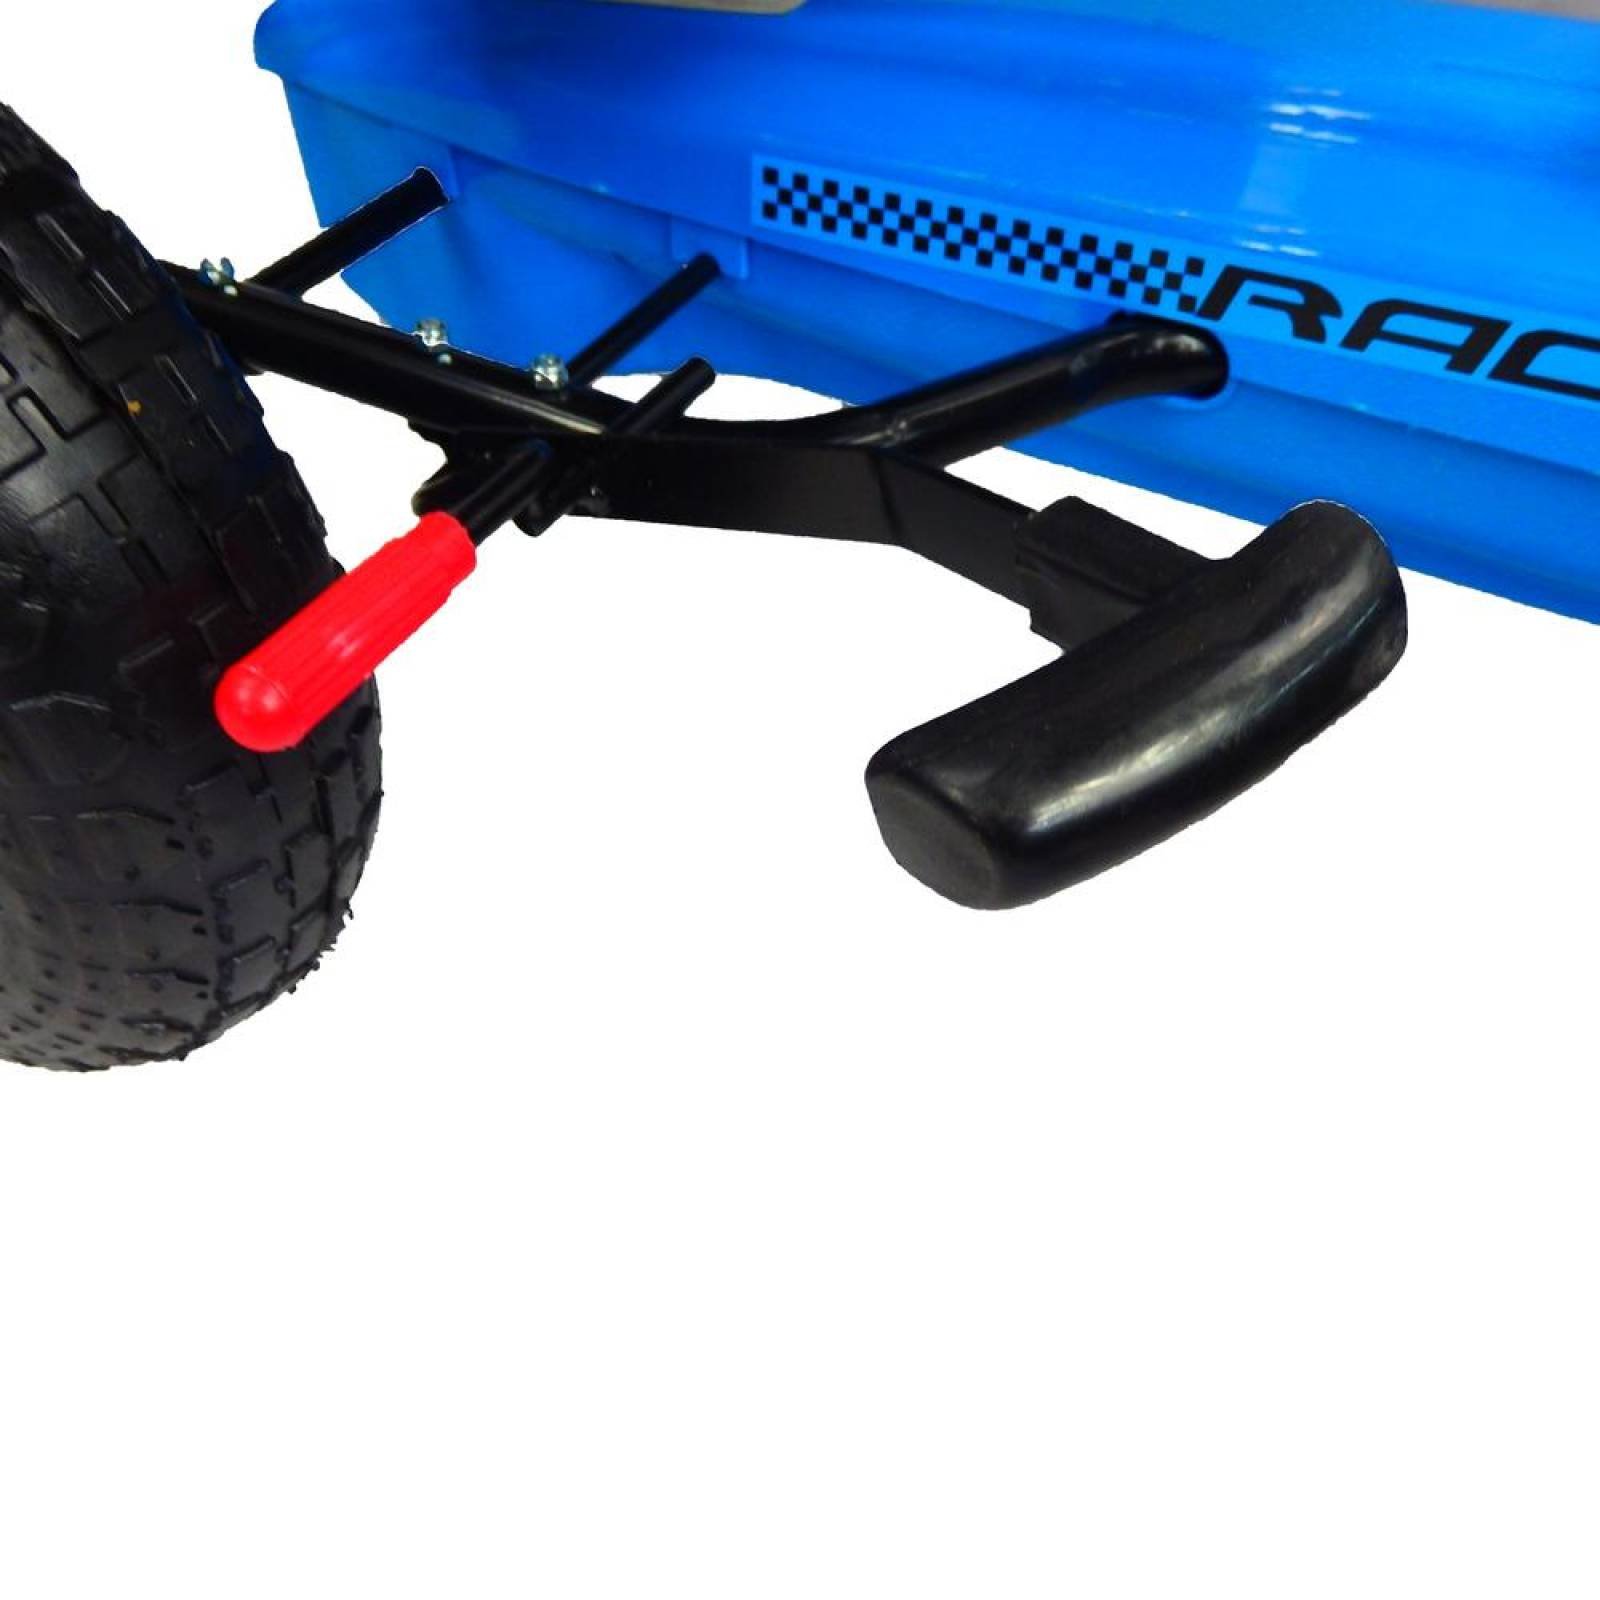 Go kart para niños con pedales y llantas de aire Tek Azul 